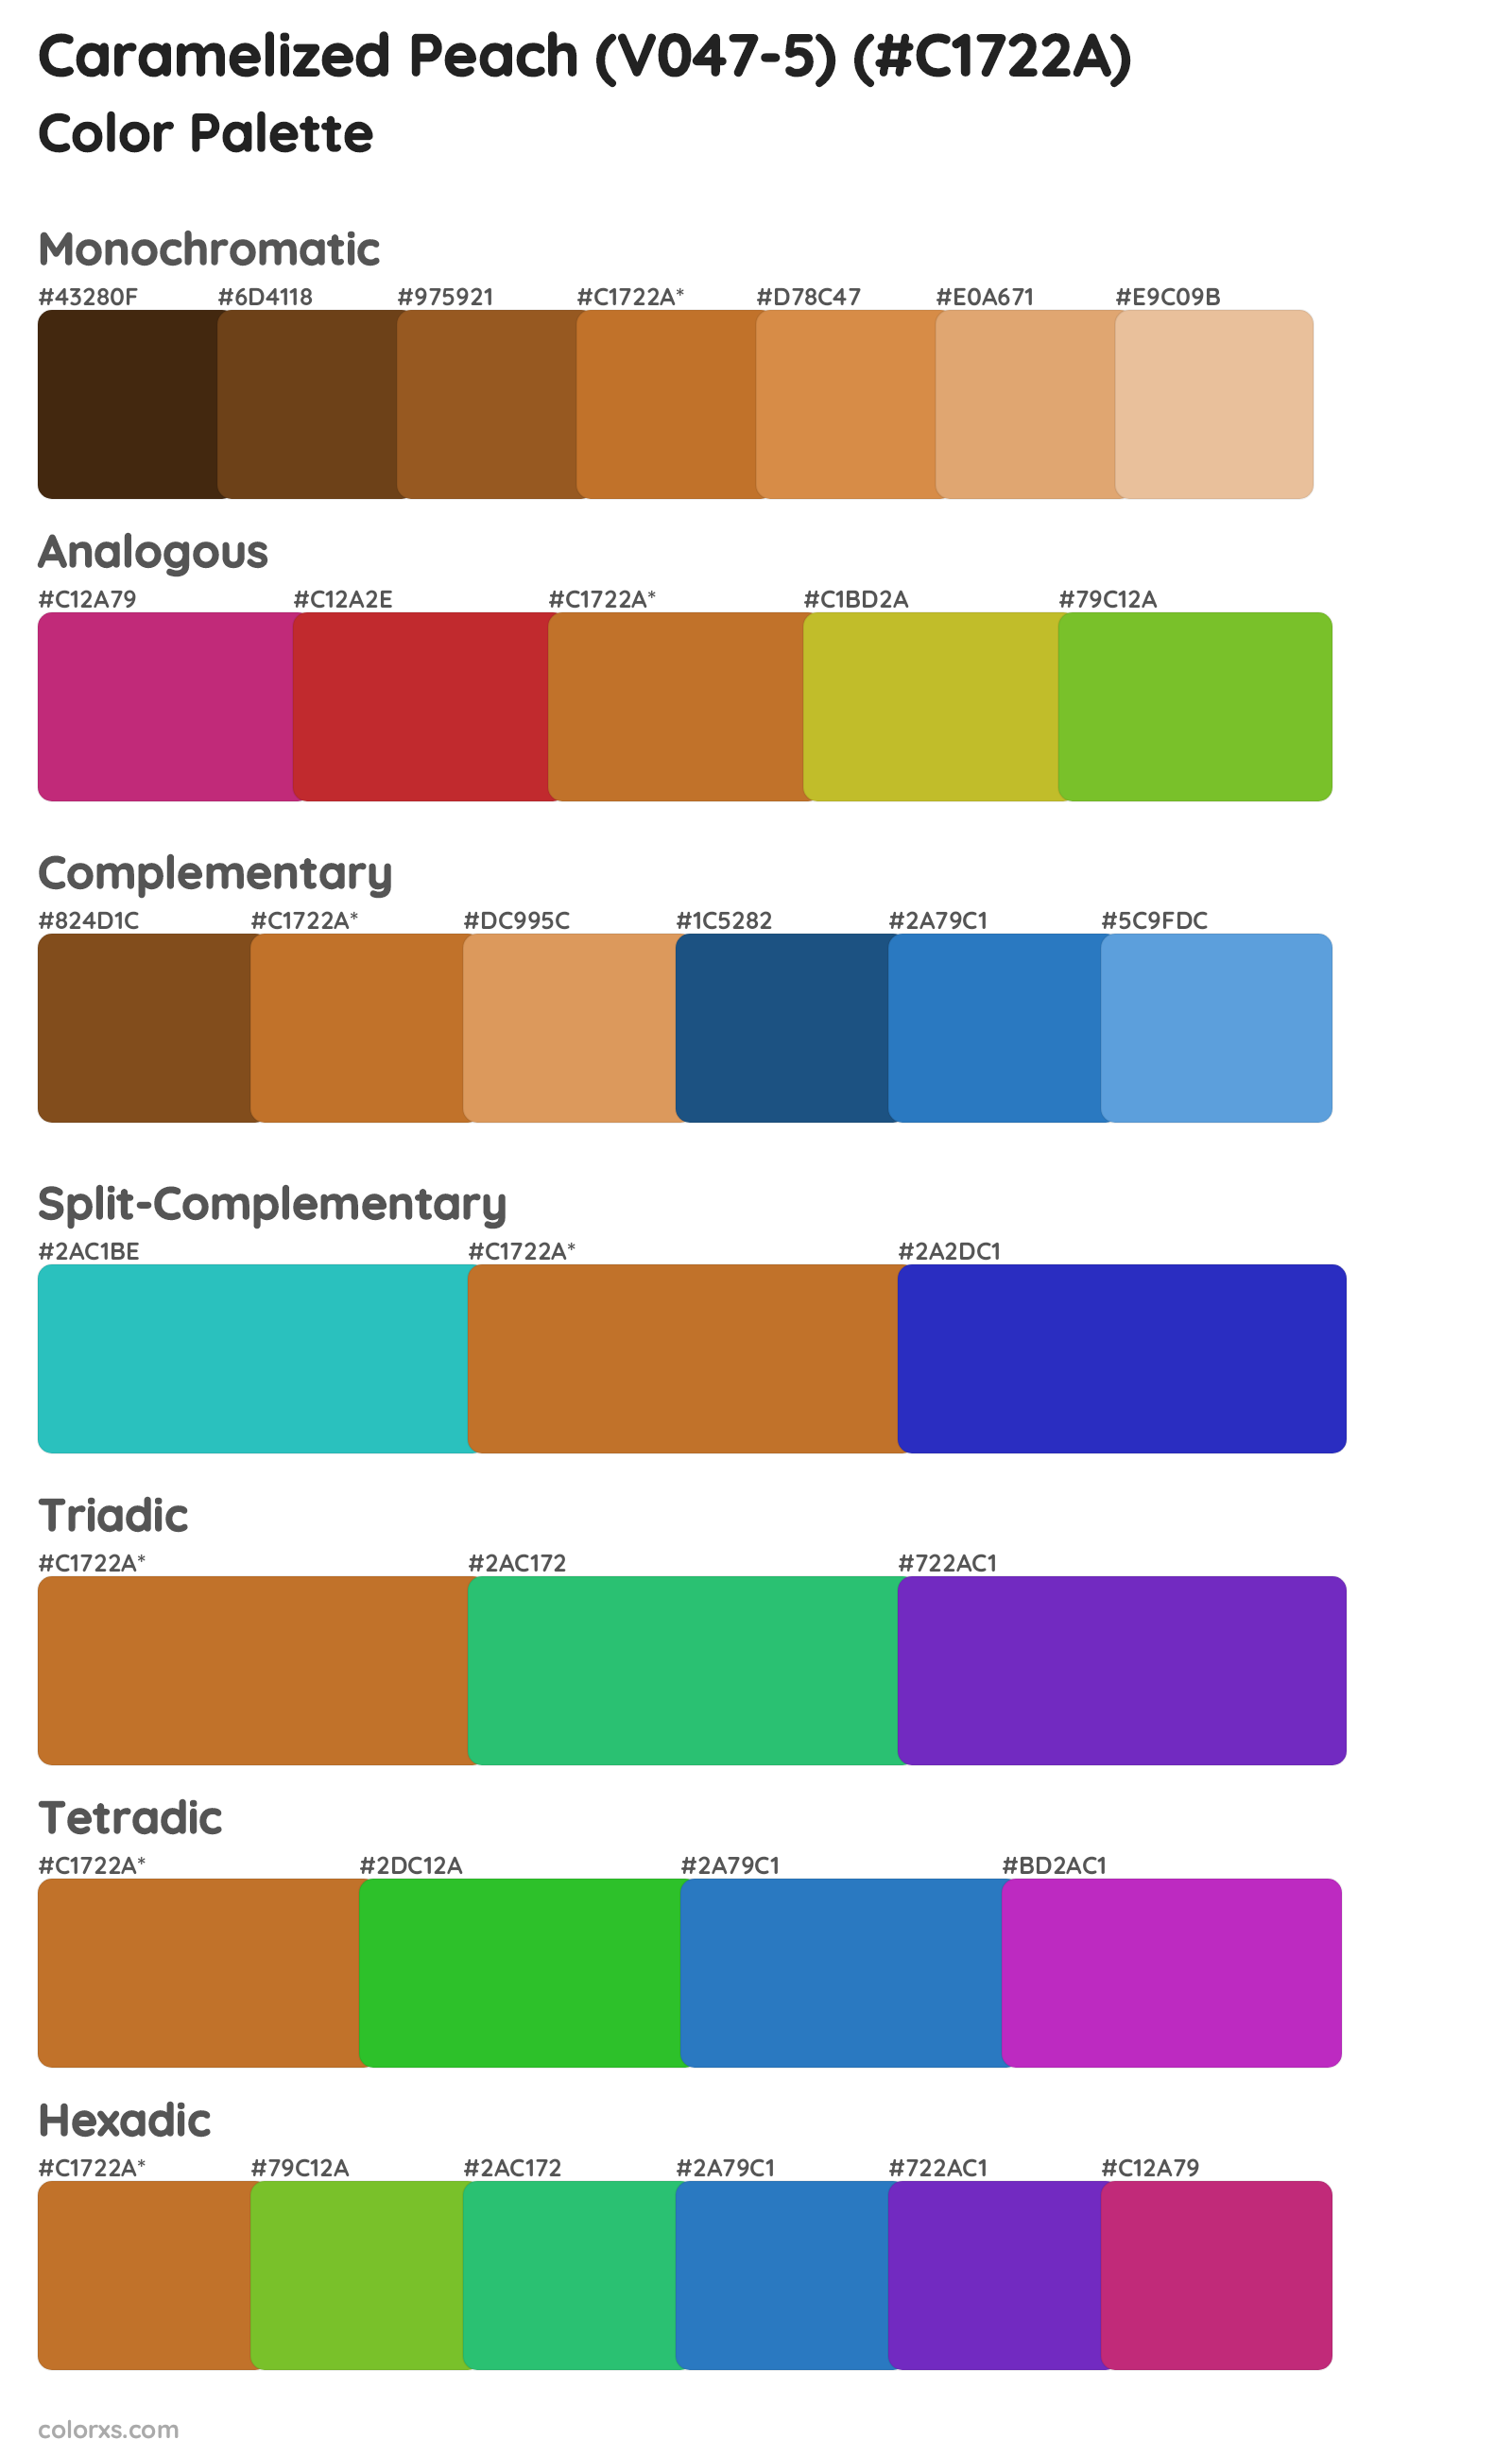 Caramelized Peach (V047-5) Color Scheme Palettes